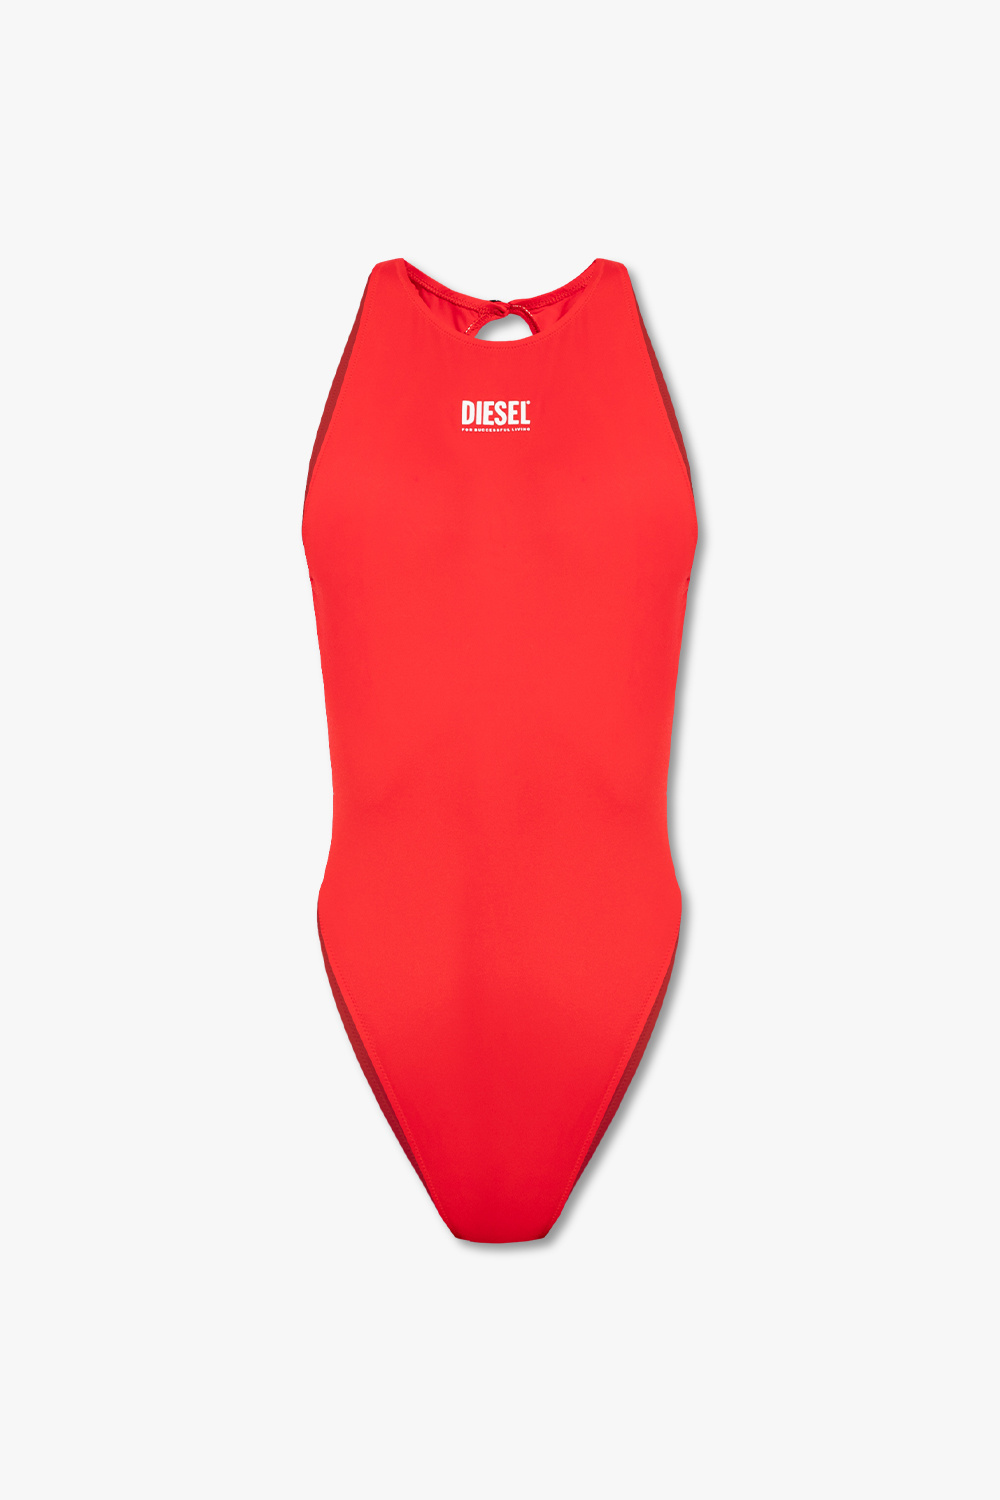 Diesel ‘BFSW-MARGU’ one-piece swimsuit